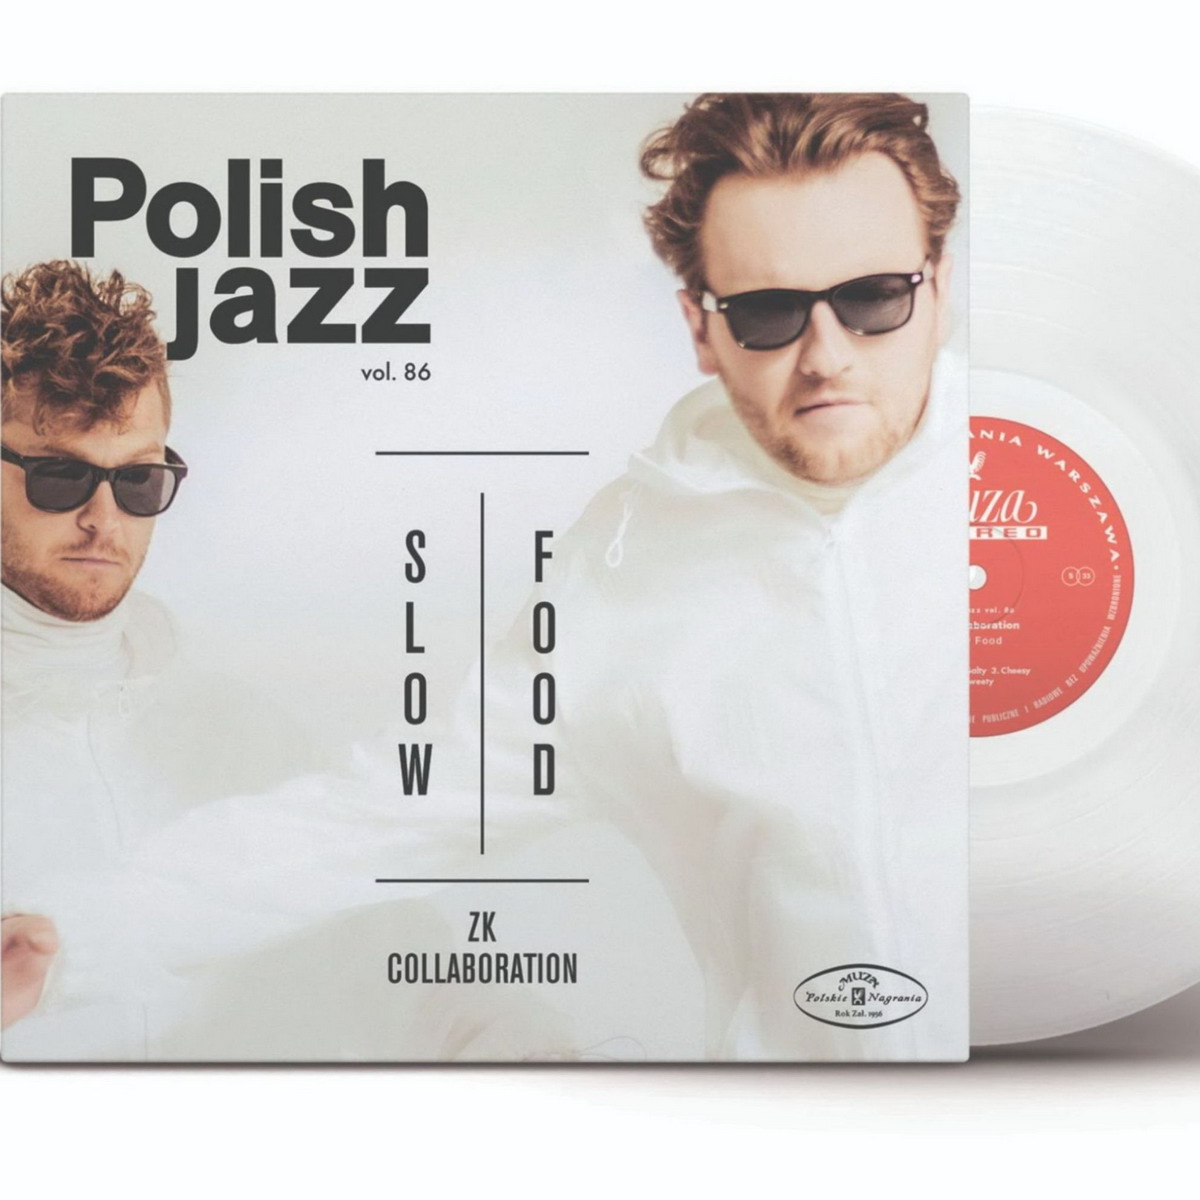 Nowe albumy z serii Polish Jazz dostępne na kolorowych winylach